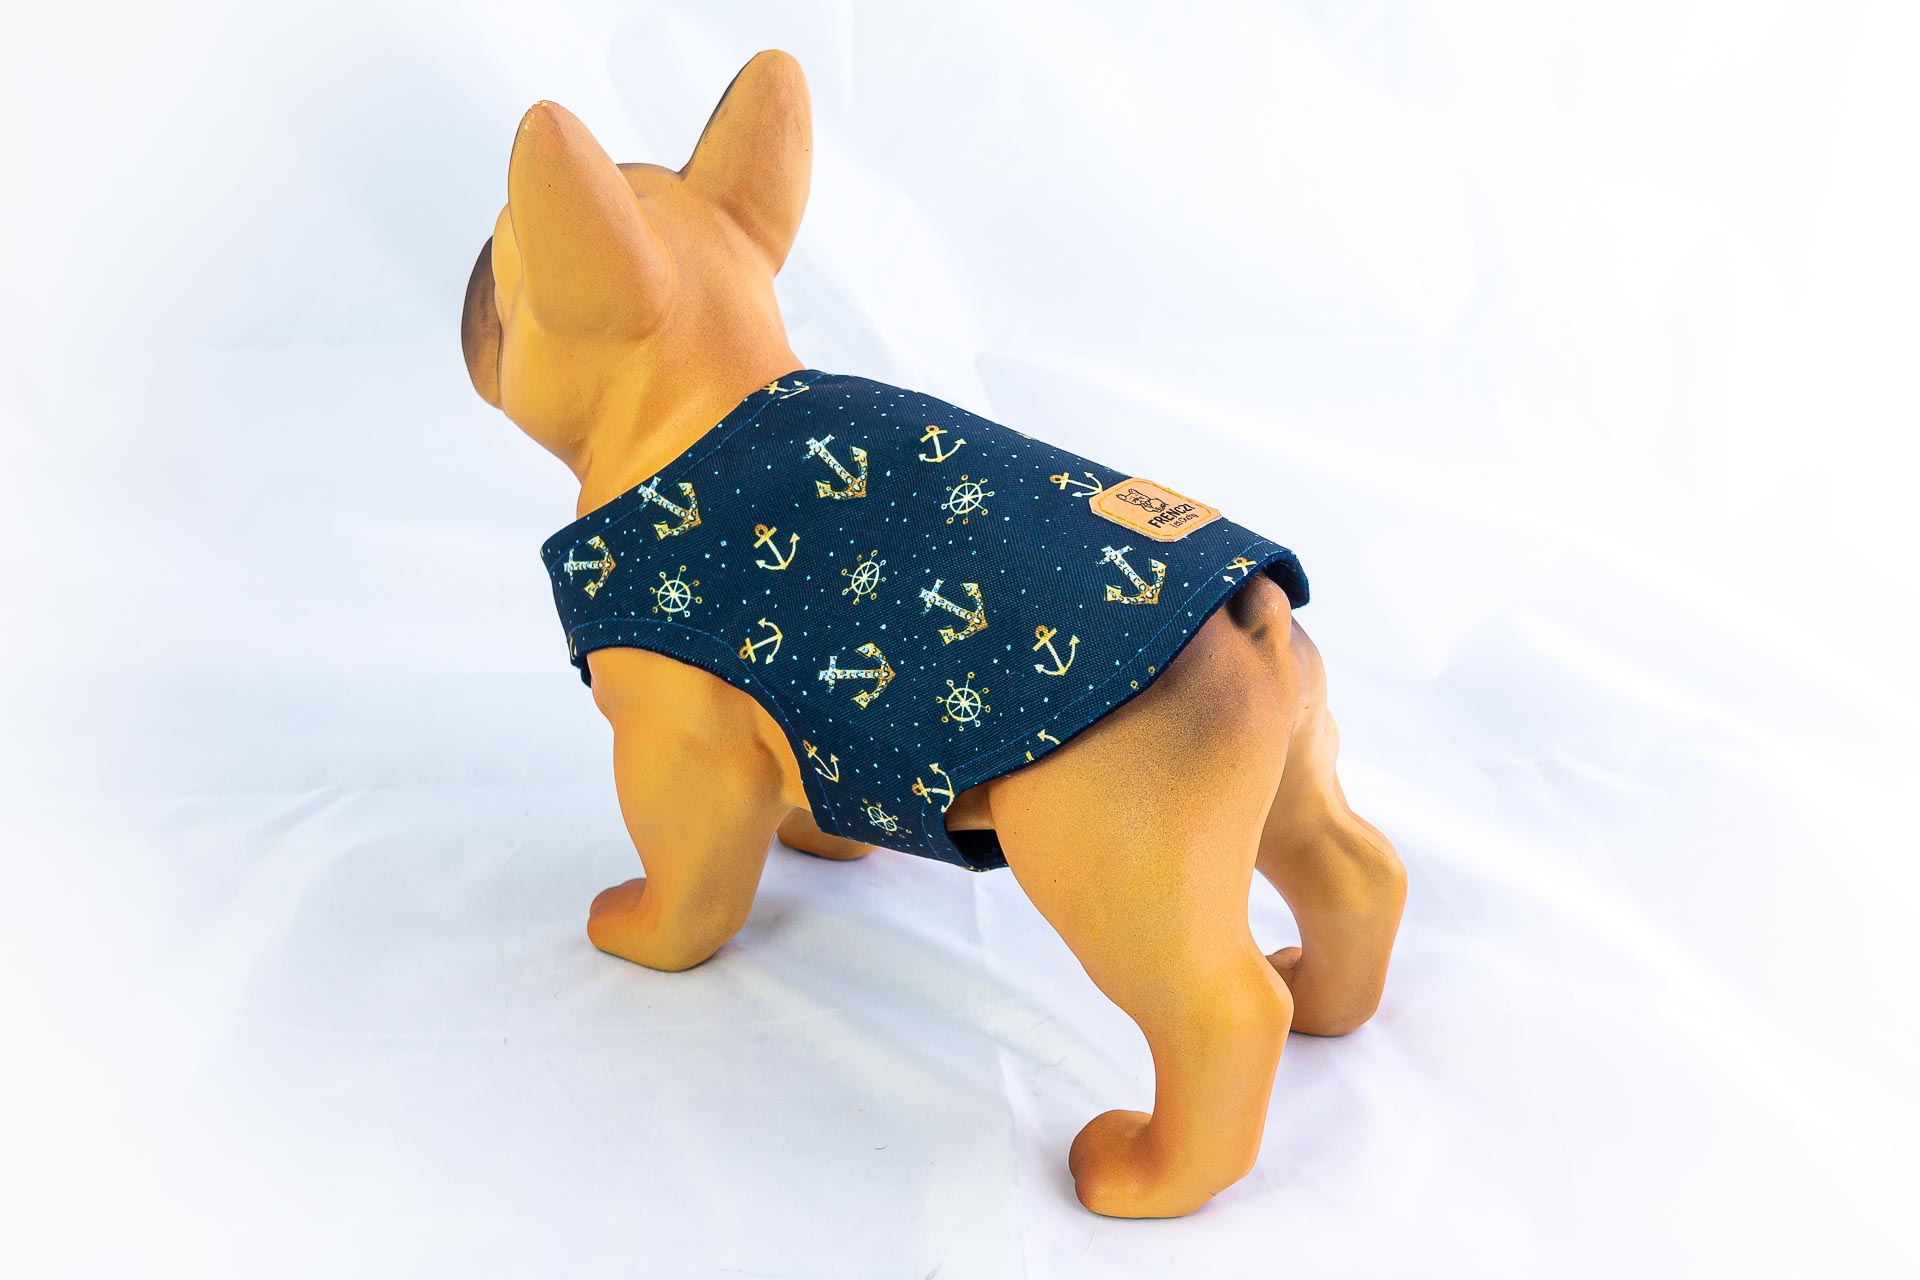 Kurtka przeciwdeszczowa dla psa marki Frenczi. Zdjęcie ubranka dla psa na miarę. Wzór Marine